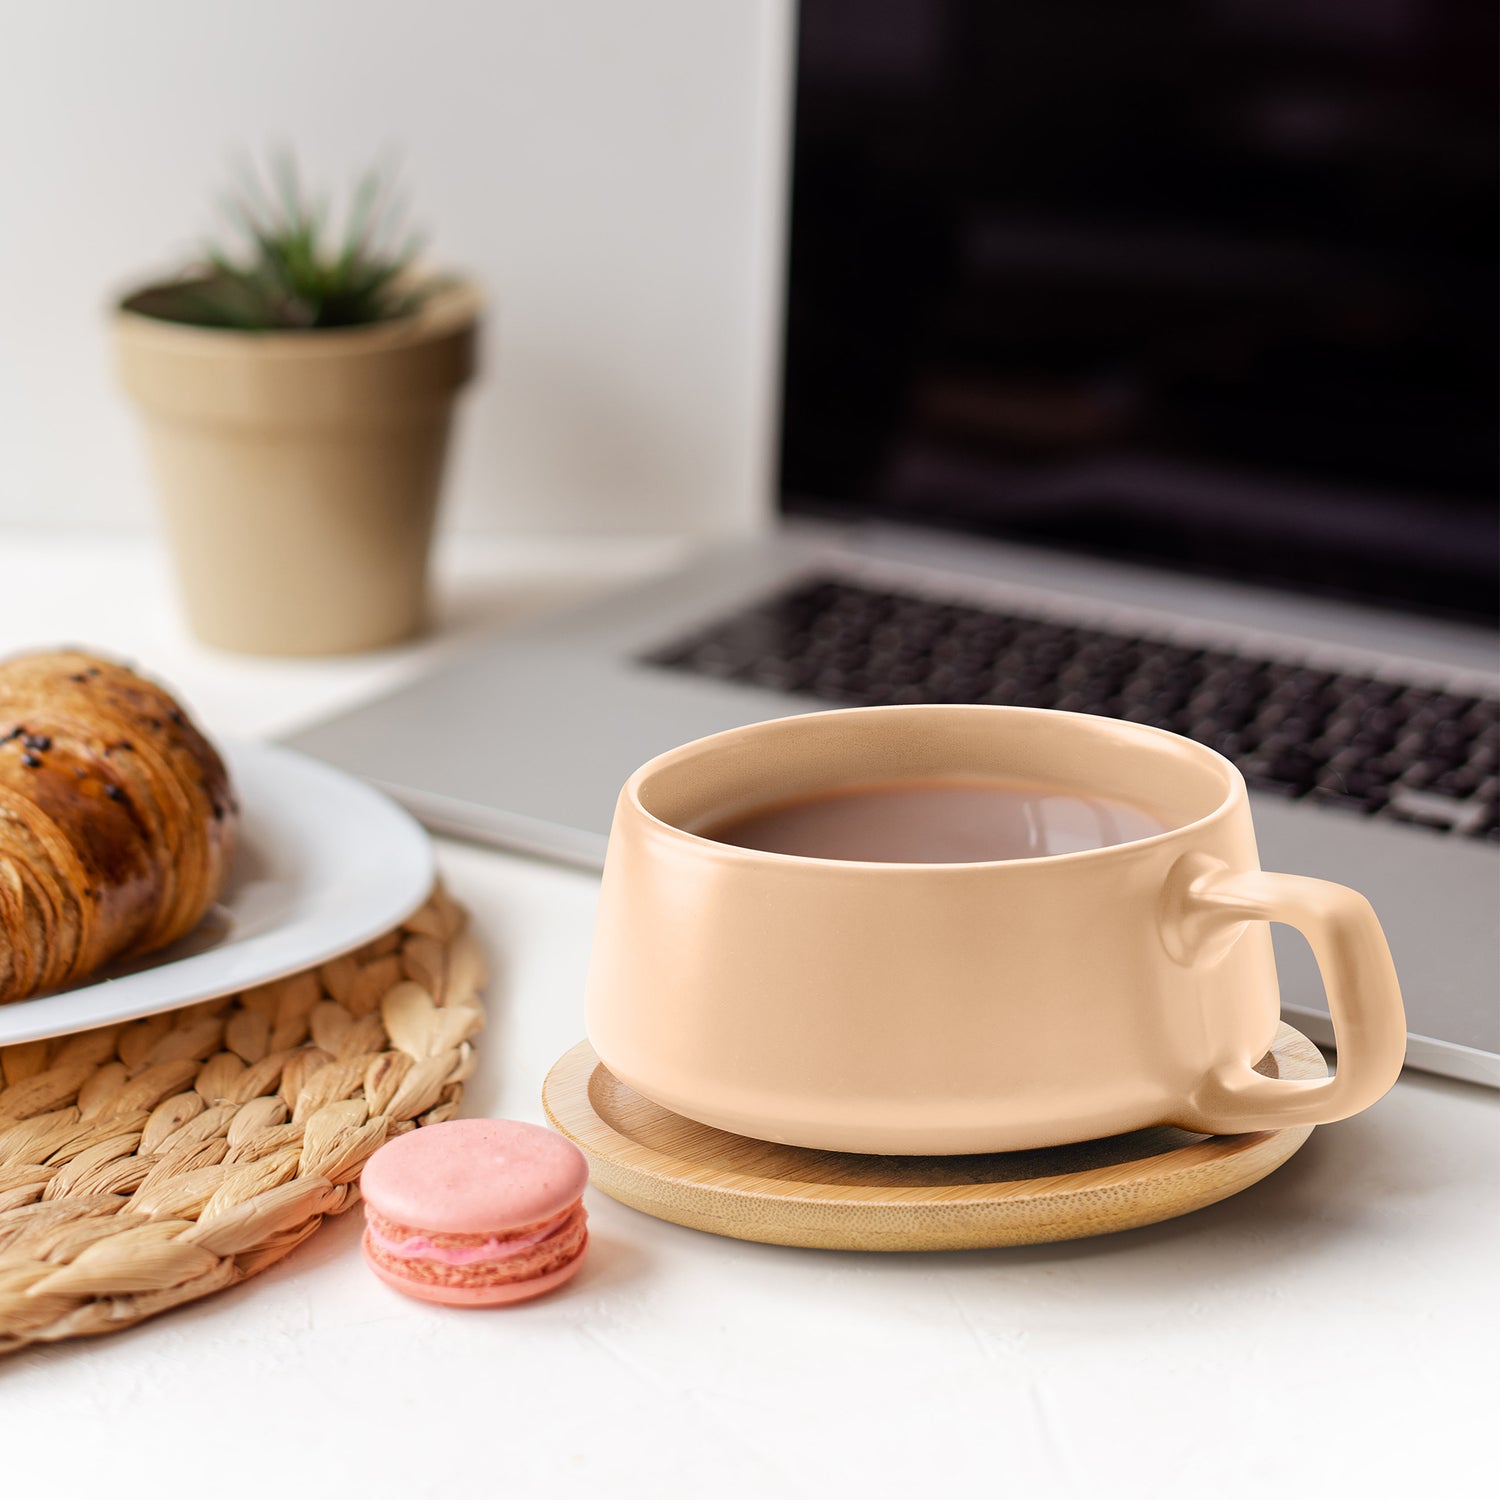 Tasse mit Kaffee auf einem Untersetzer aus Holz neben einem Croissant und Macaron, die vor einem Laptop steht